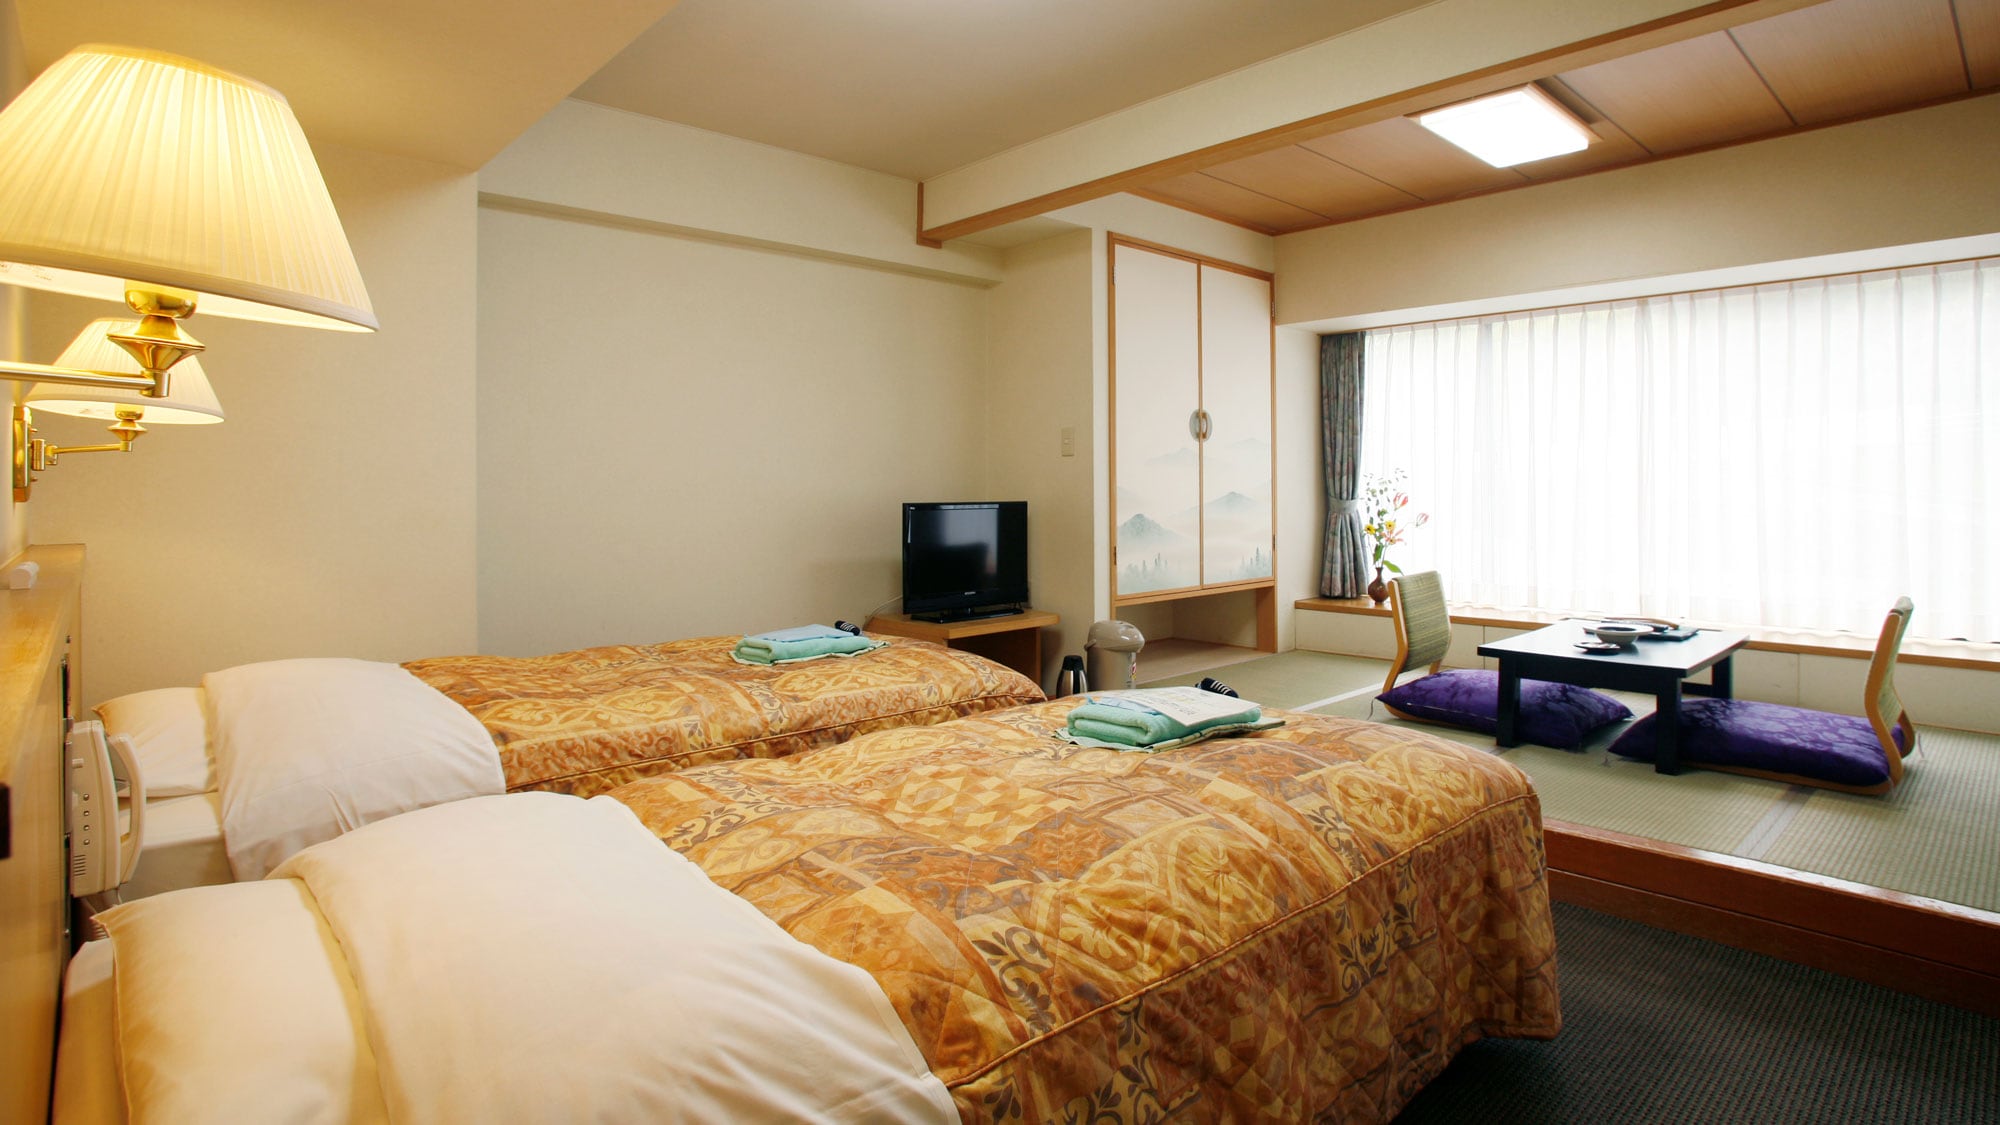 Main building lower floor "Japanese-Western style room" / Japanese-Western style room based on refined Western taste. (Example guest room)